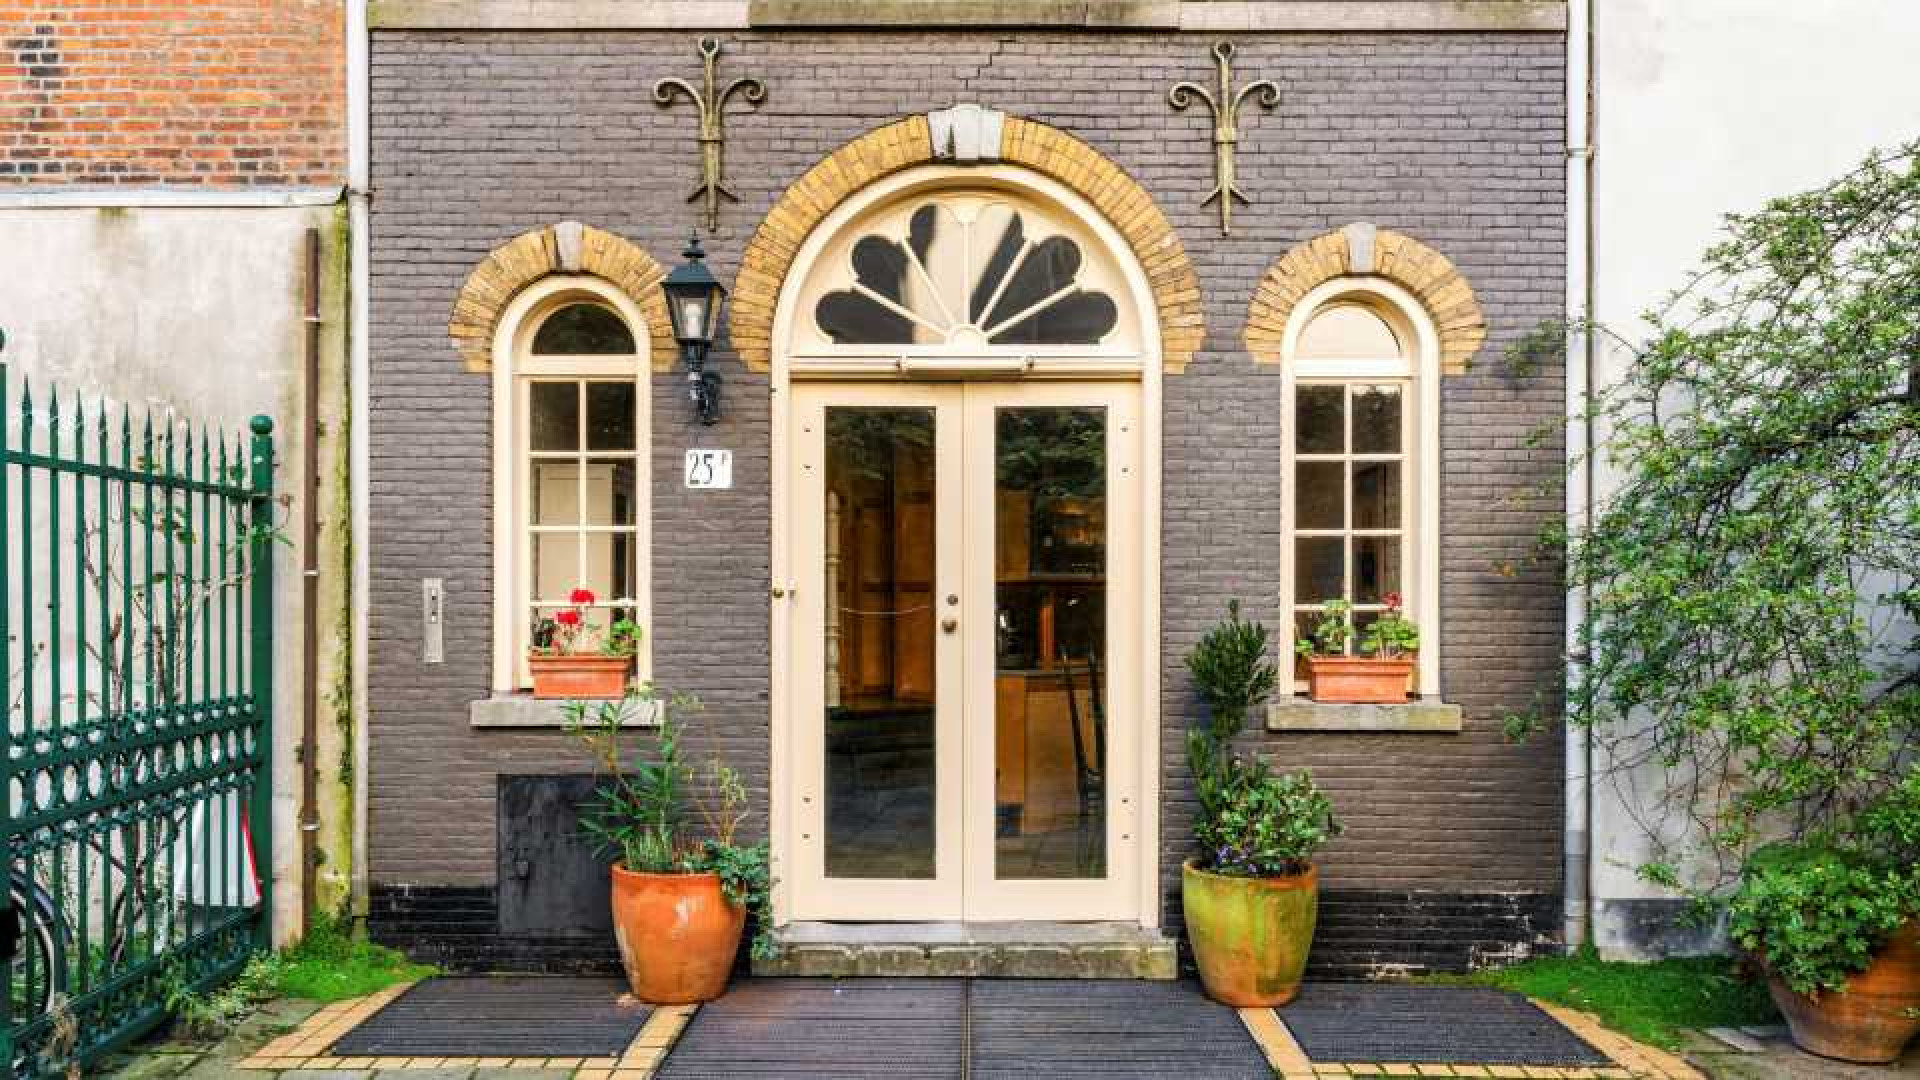 Deze te koop staande woning staat in de paleistuin van koning Willem Alexander en koningin Maxima. Zie foto's